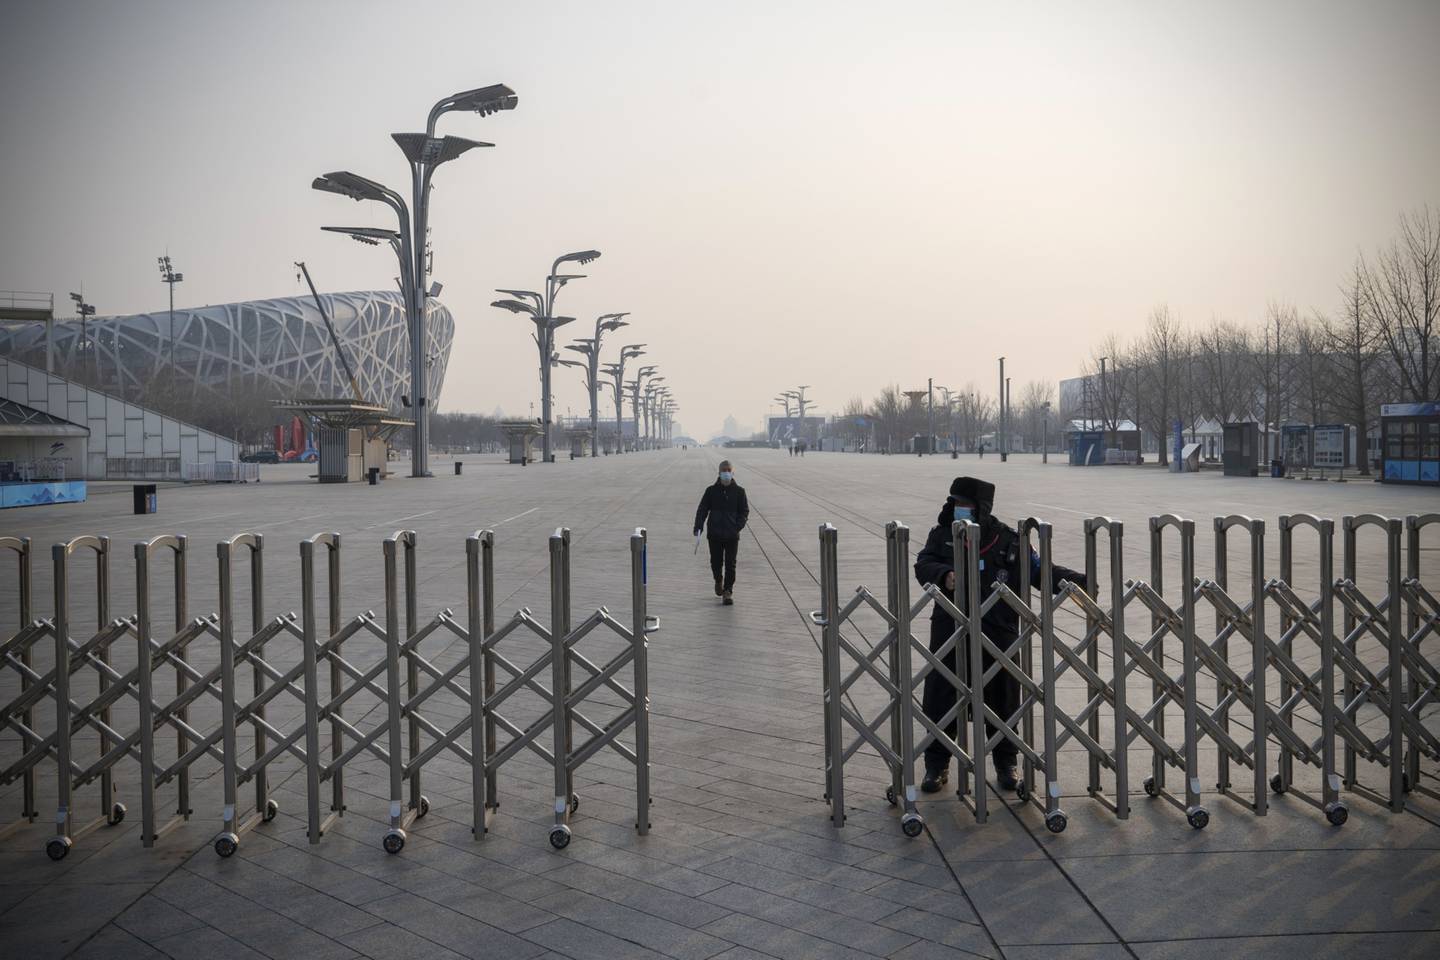 Una barricada instalada para los Juegos Olímpicos y Paralímpicos de Invierno de Pekín 2022 cerca del Estadio Nacional en Pekín, el 7 de enero.dfd